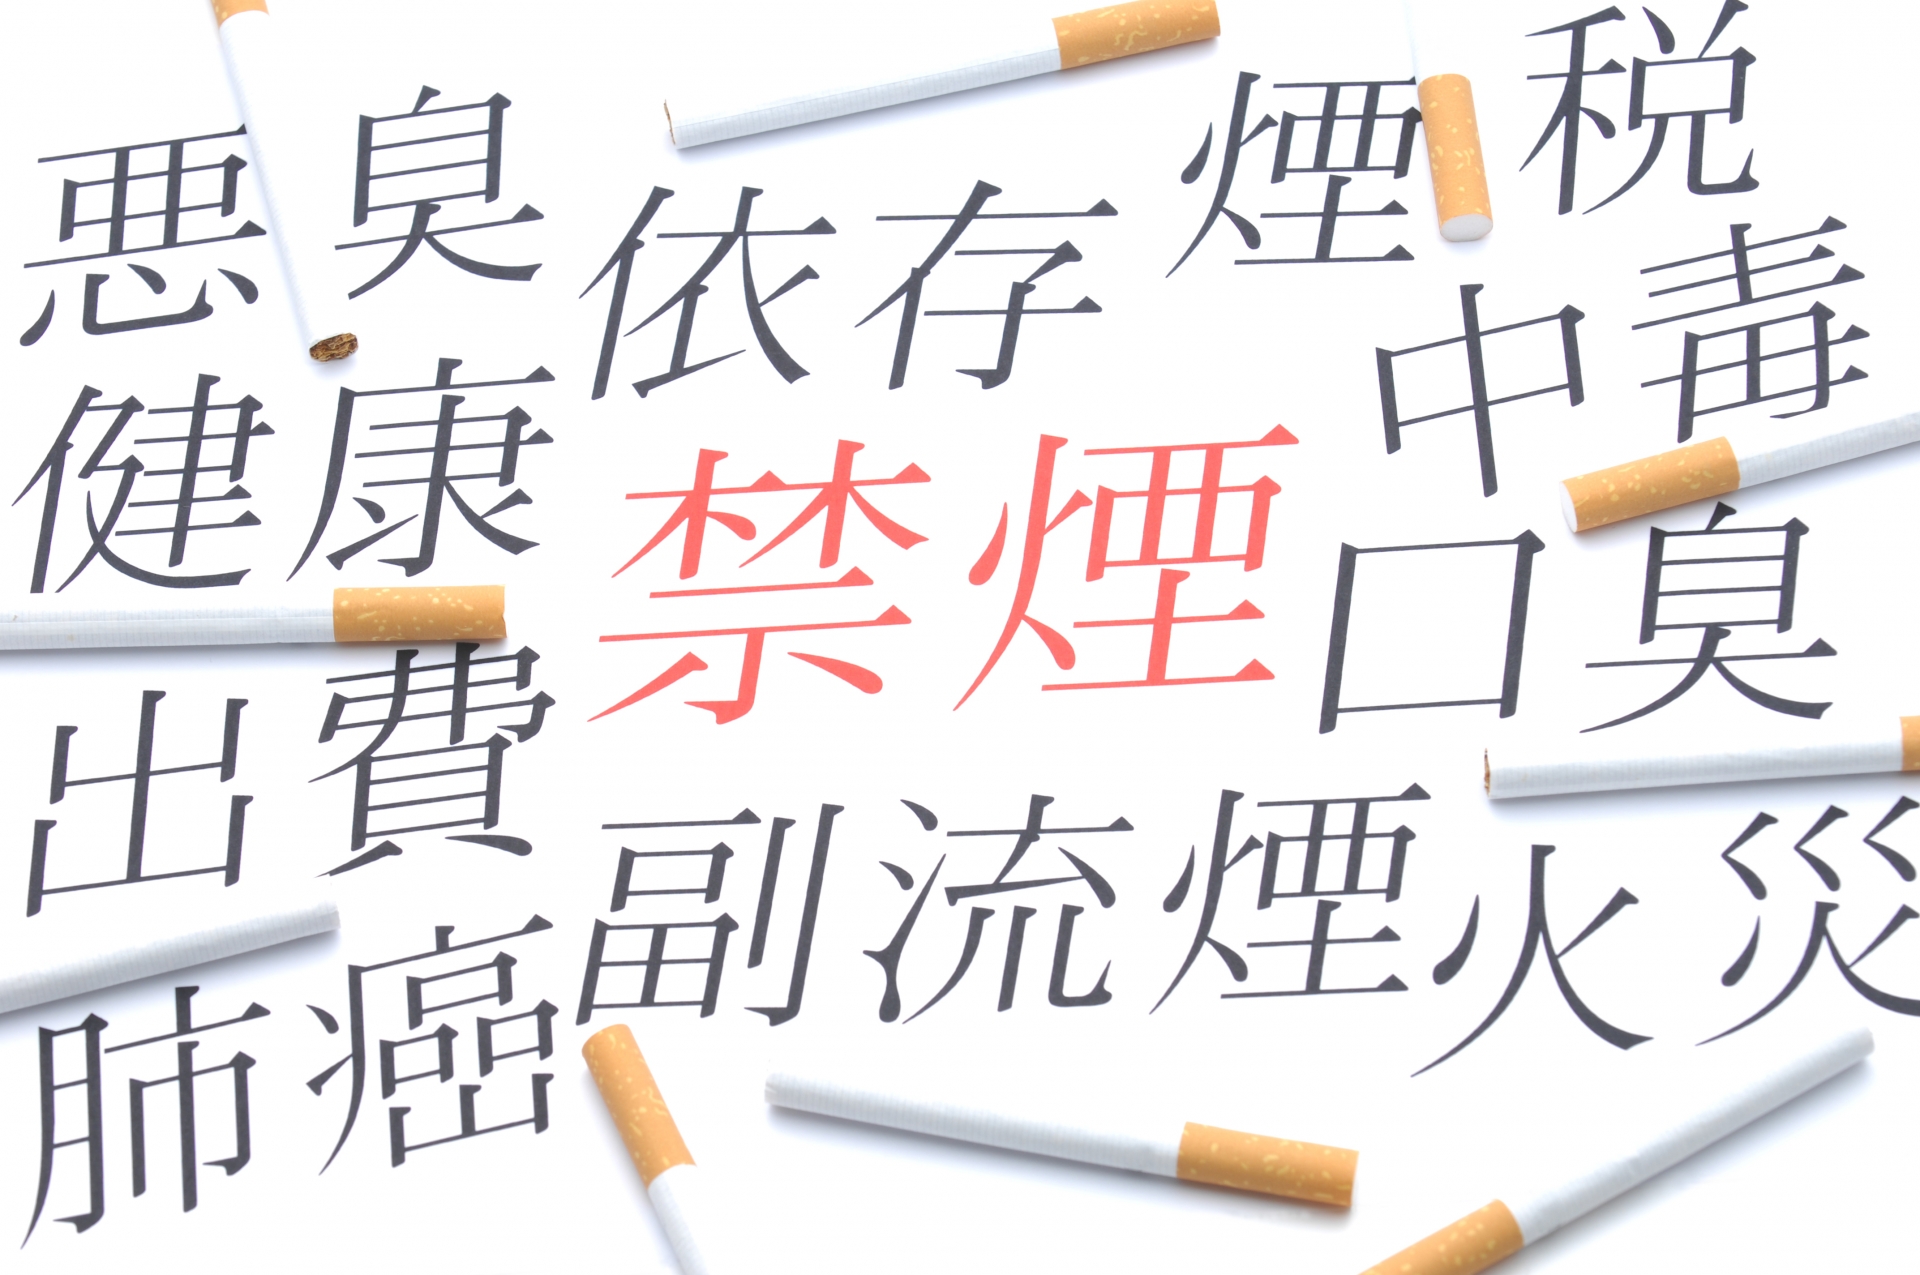 タバコの禁煙に成功した芸能人の禁煙法